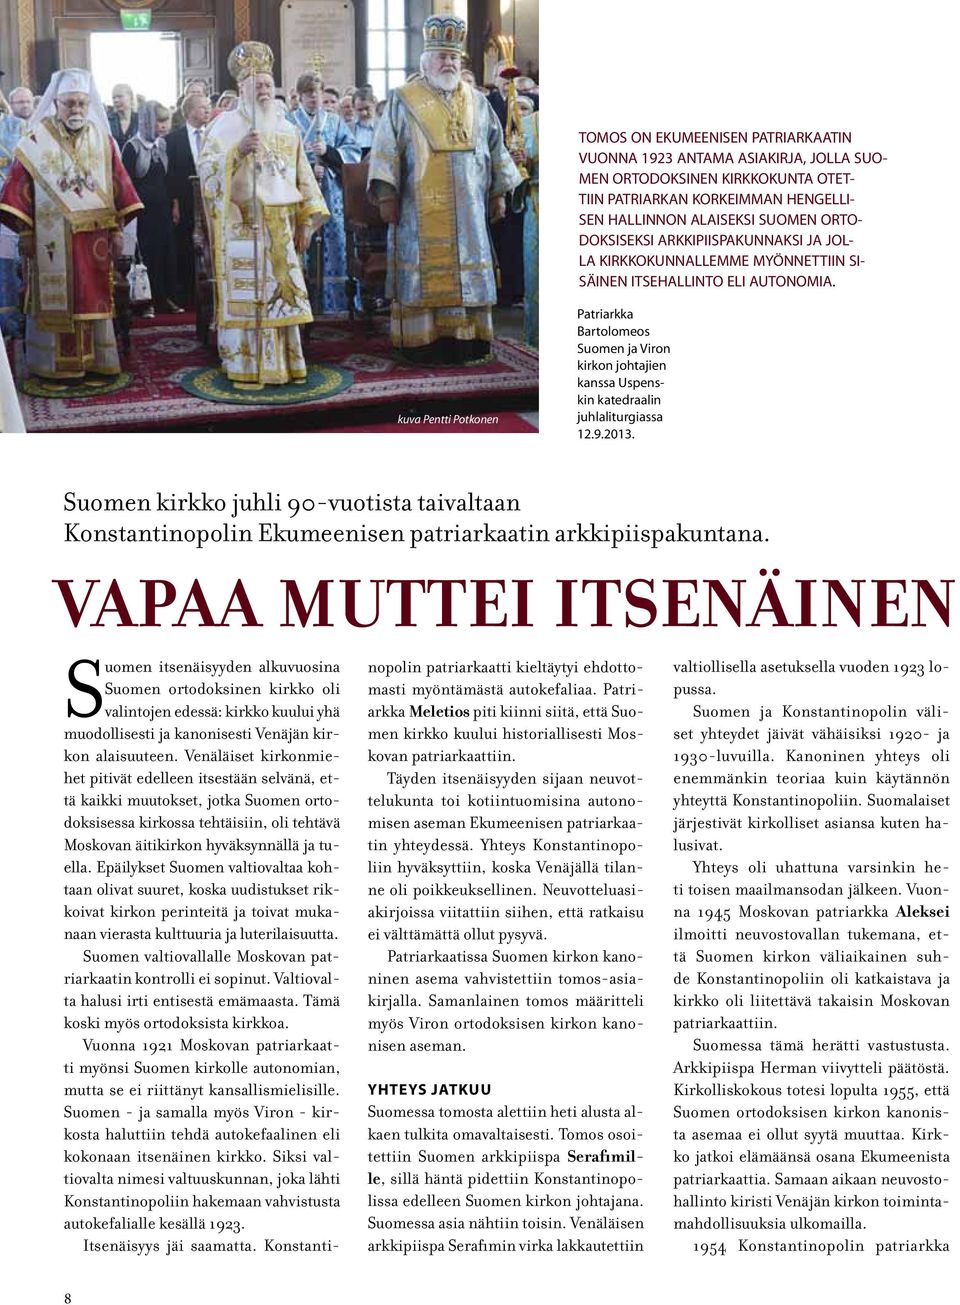 kuva Pentti Potkonen Patriarkka Bartolomeos Suomen ja Viron kirkon johtajien kanssa Uspenskin katedraalin juhlaliturgiassa 12.9.2013.